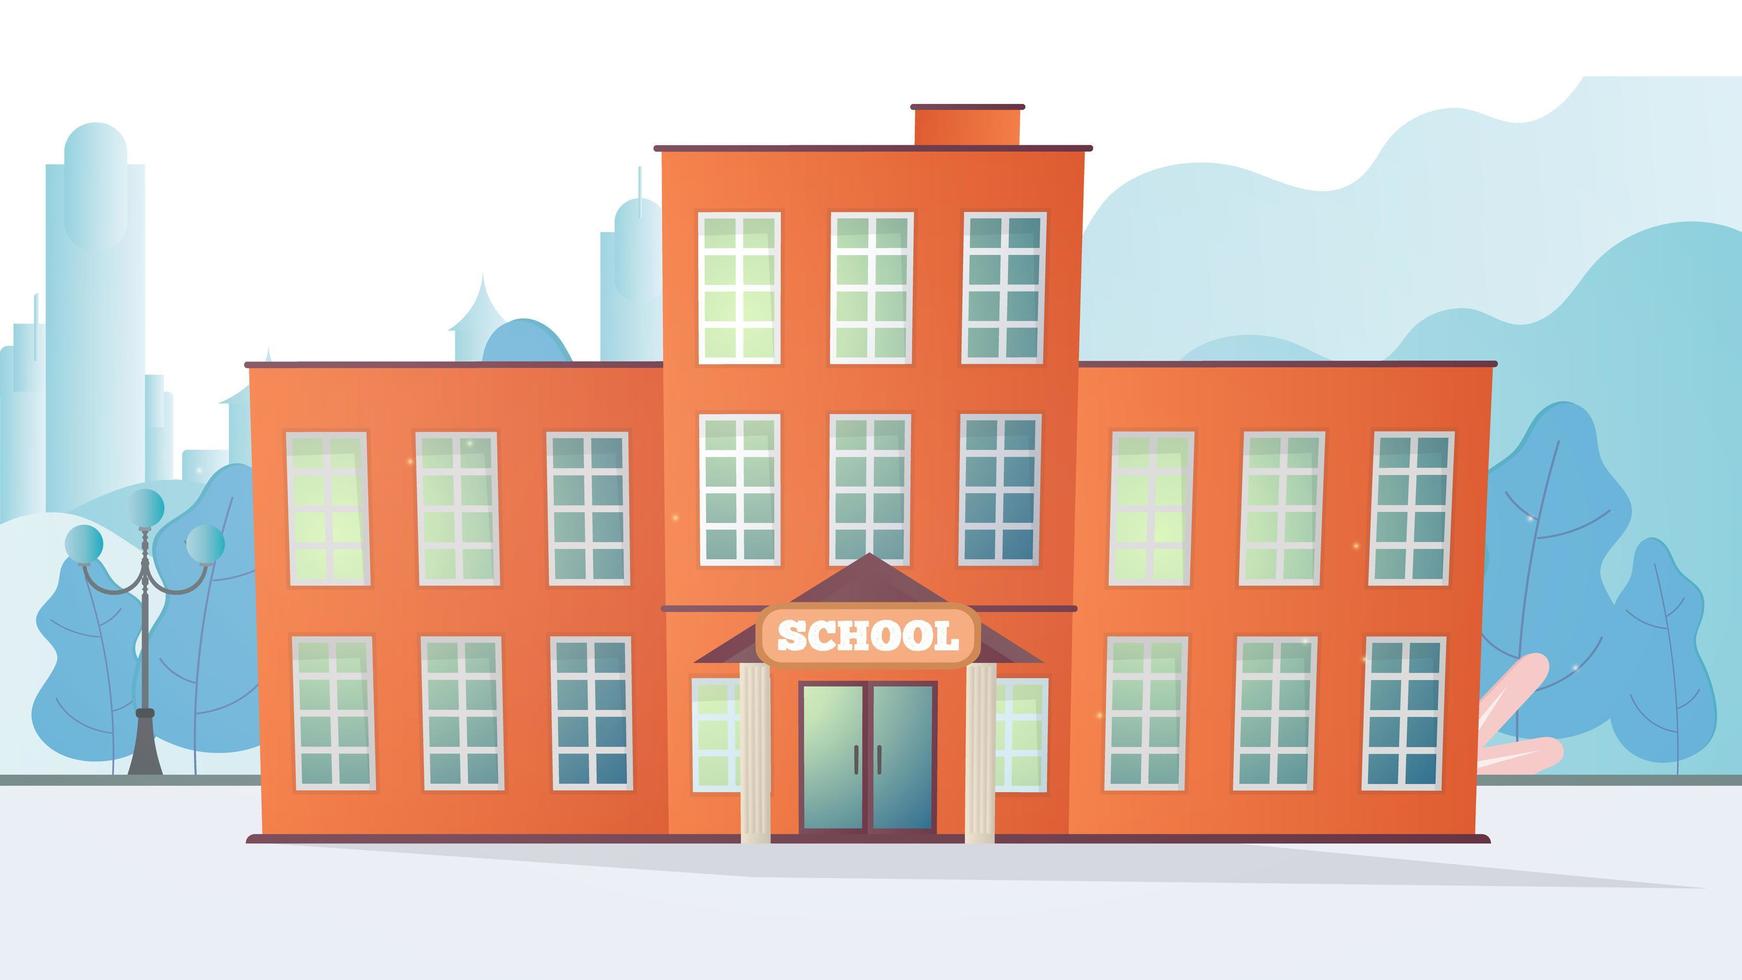 vektor illustration av en skolbyggnad. skola i platt stil.